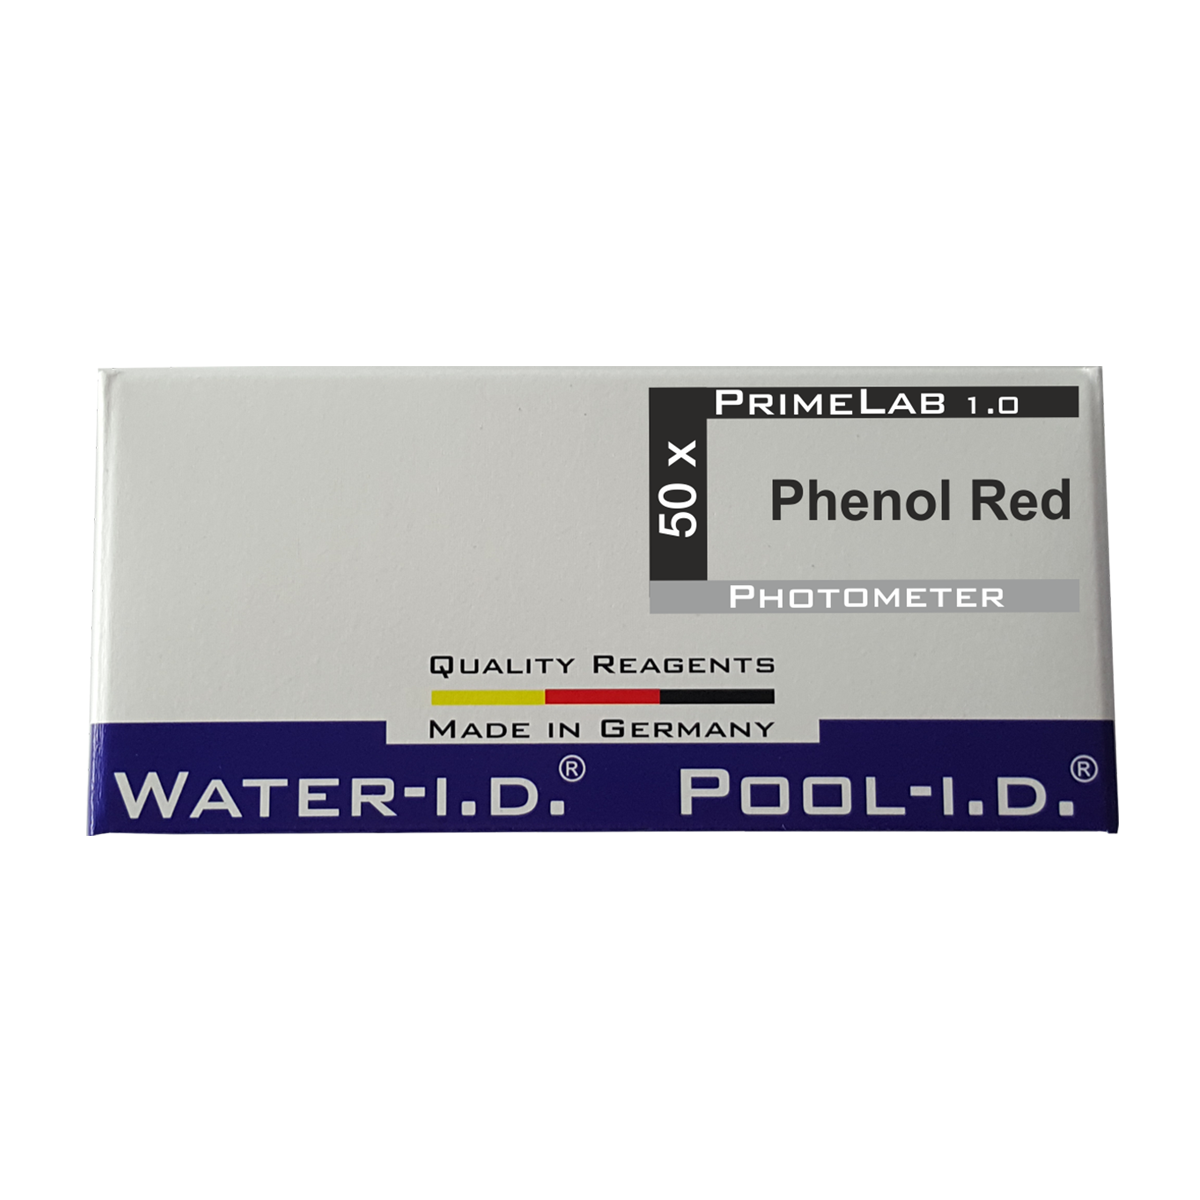 Phenol Red Tabletten für Smart Pool Lab 1.0 Photometer, 1 VE = 50 Stk. Phenol Red Tabletten für Smart Pool Lab 1.0 Photometer, 1 VE = 50 Stk.